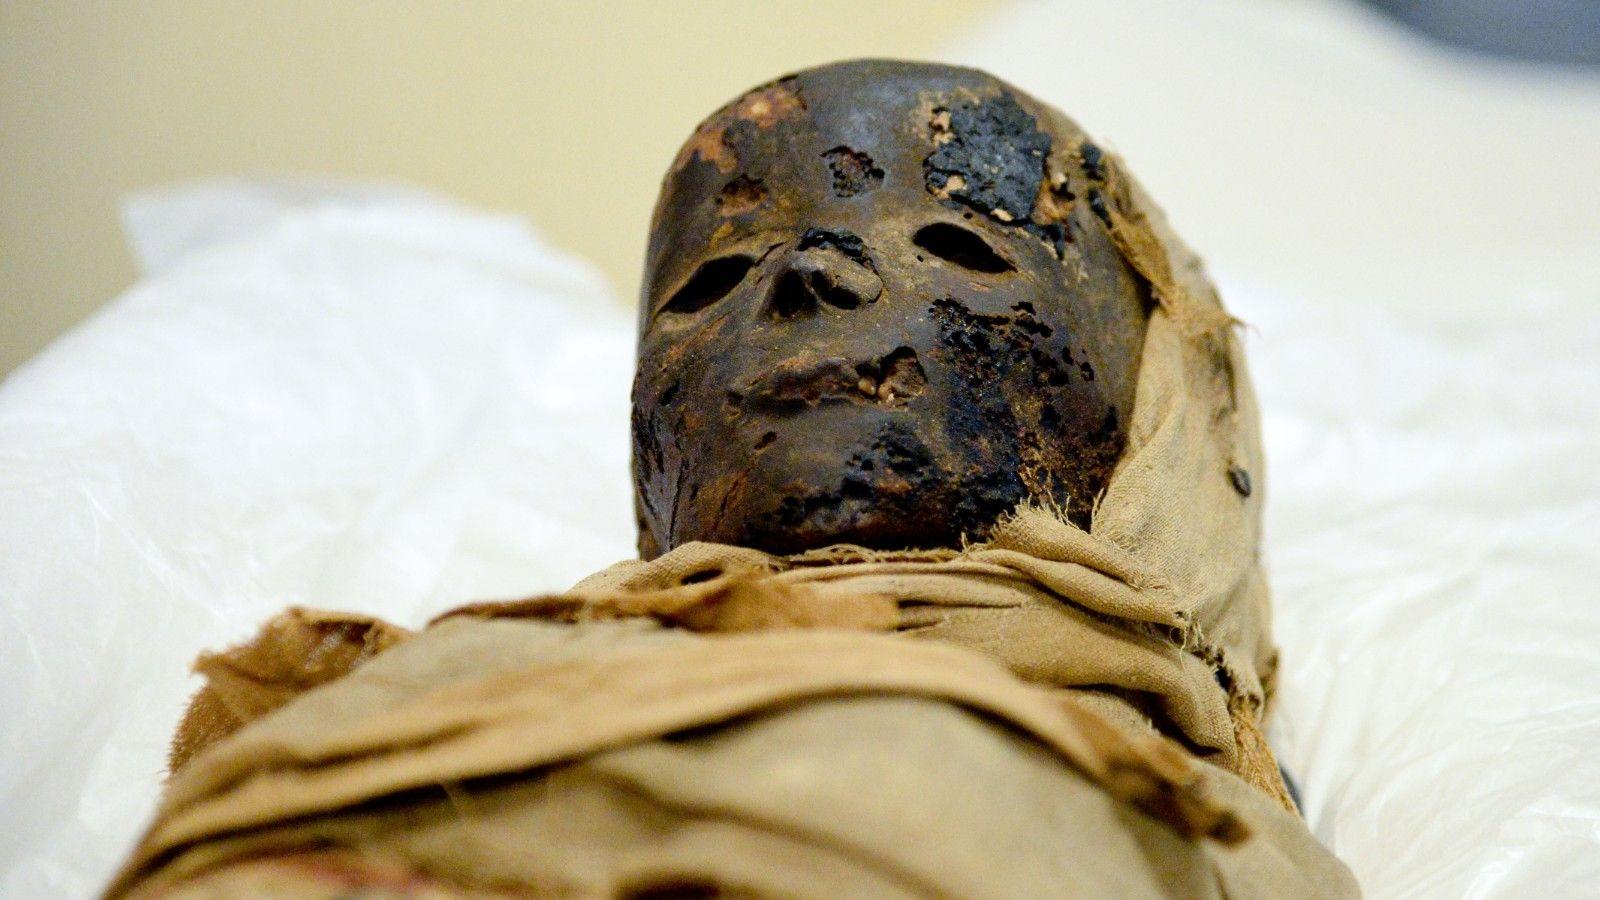 Child mummies uncovered